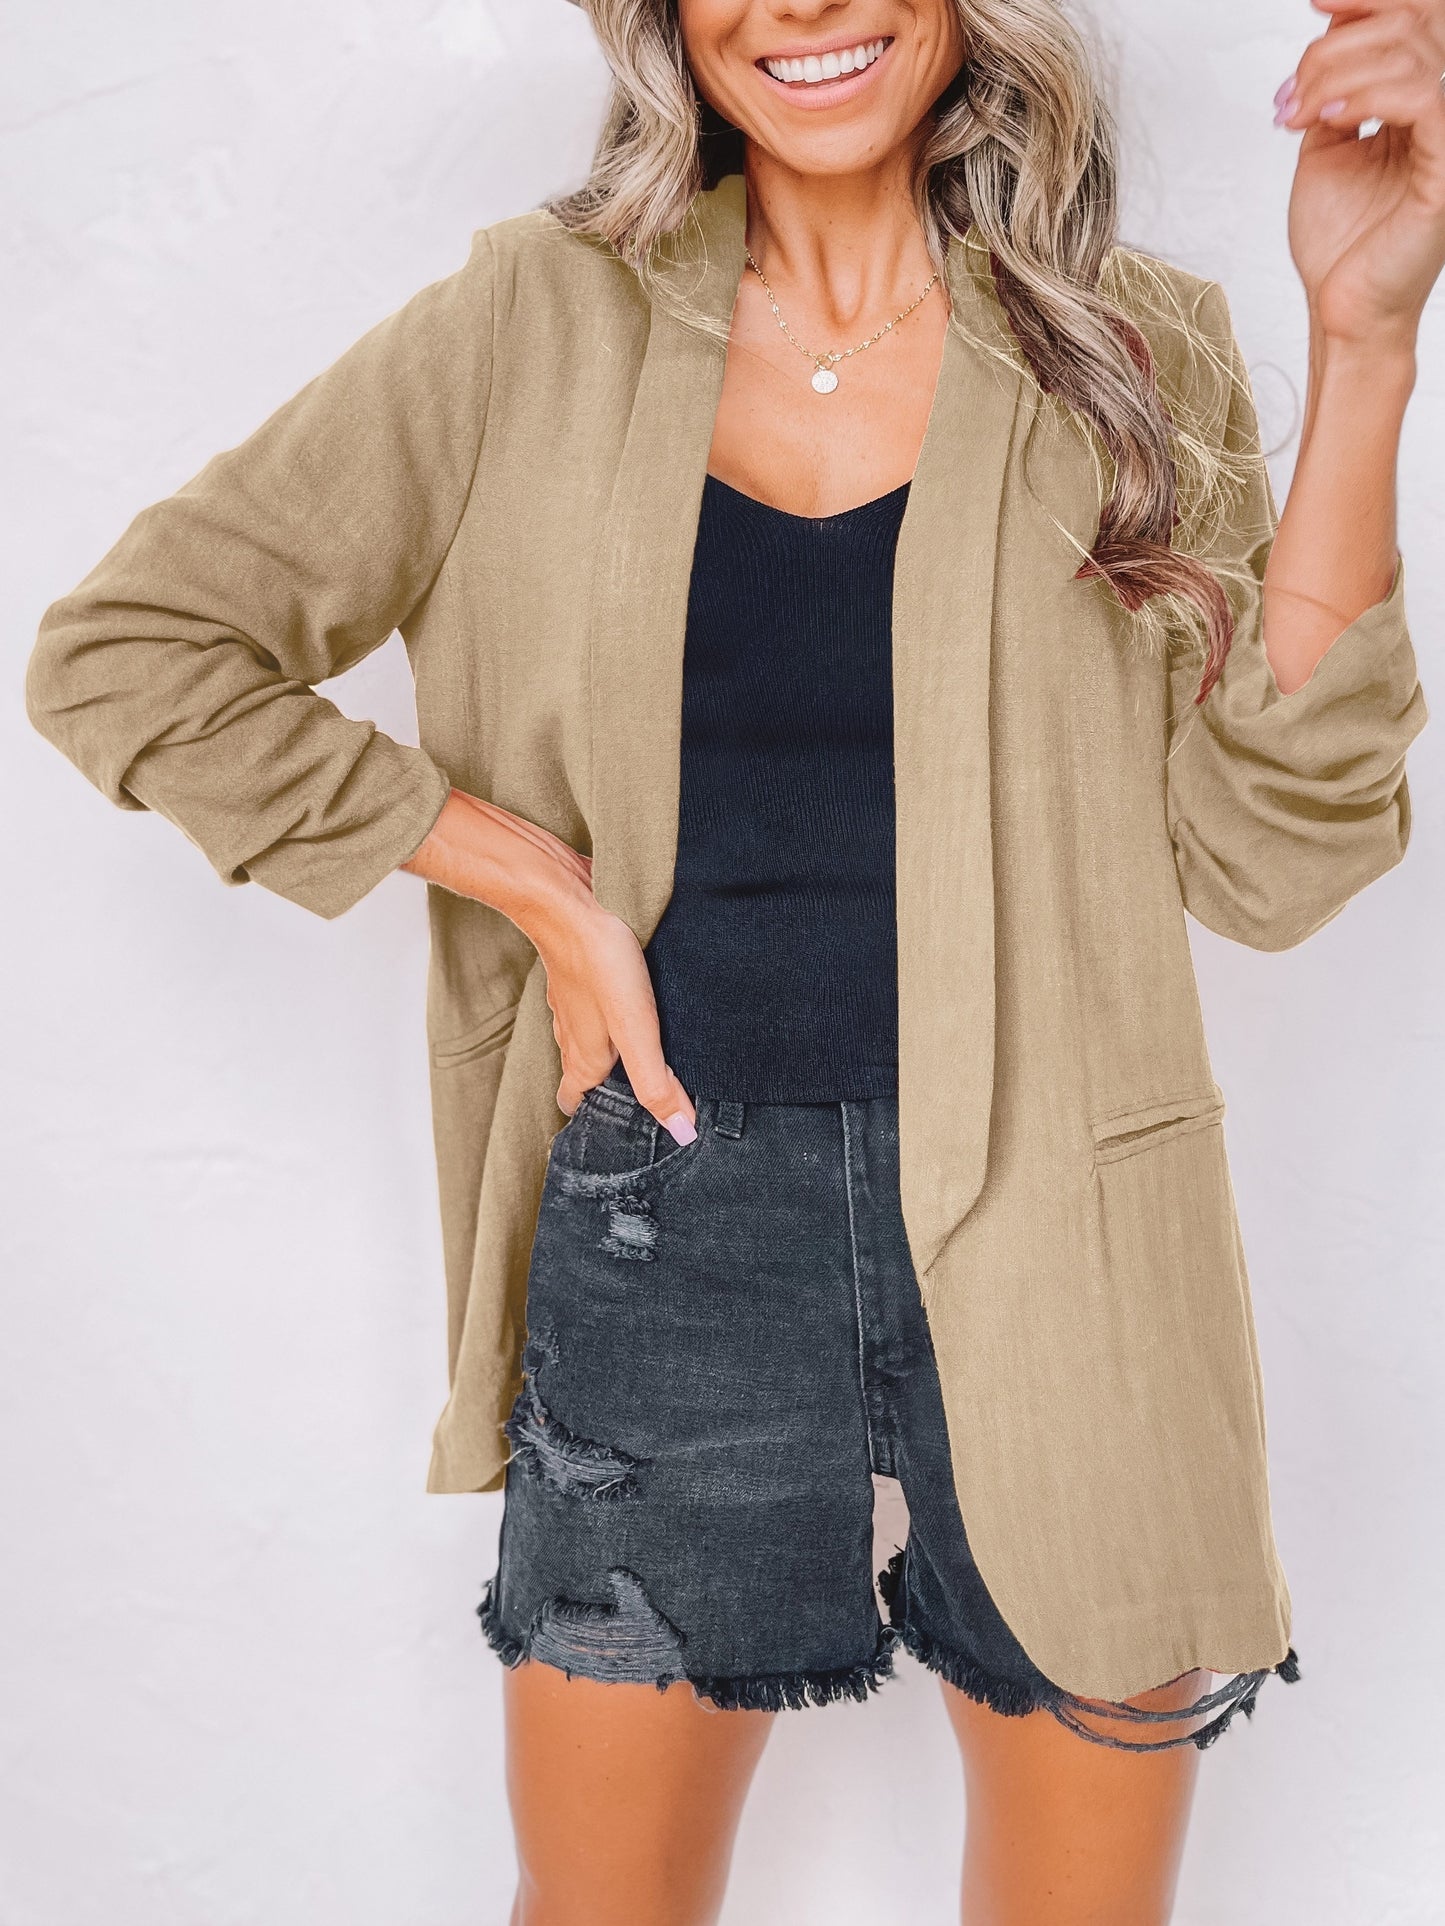 「binfenxie」Solid Lapel Blazer Jacket, Casual Long Sleeve Office Work Outerwear, Women's Clothing